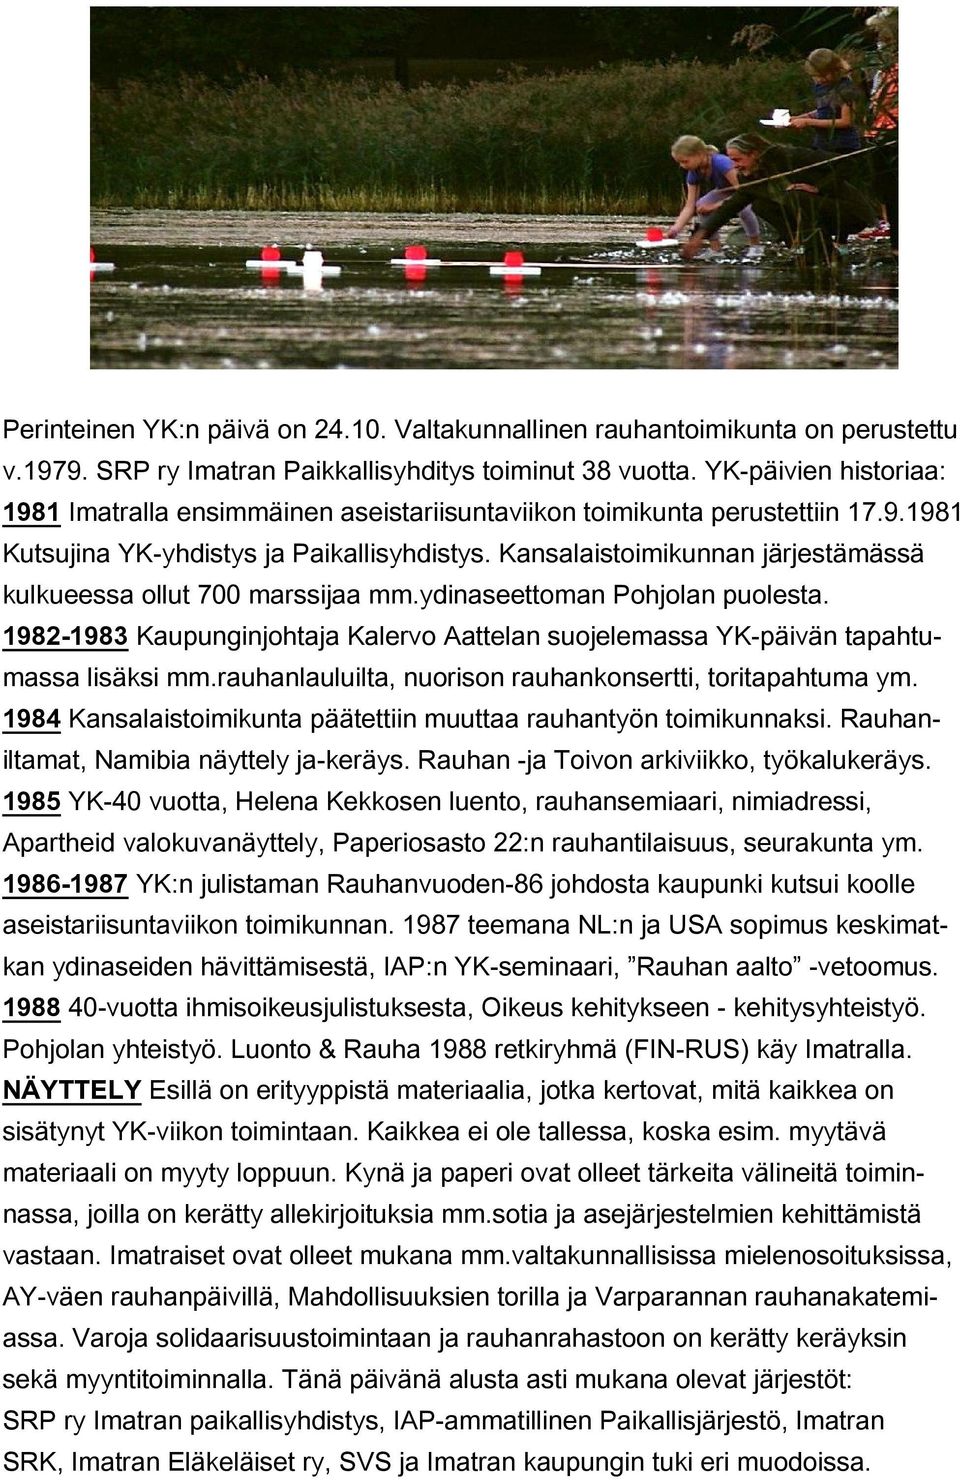 Kansalaistoimikunnan järjestämässä kulkueessa ollut 700 marssijaa mm.ydinaseettoman Pohjolan puolesta. 1982-1983 Kaupunginjohtaja Kalervo Aattelan suojelemassa YK-päivän tapahtumassa lisäksi mm.